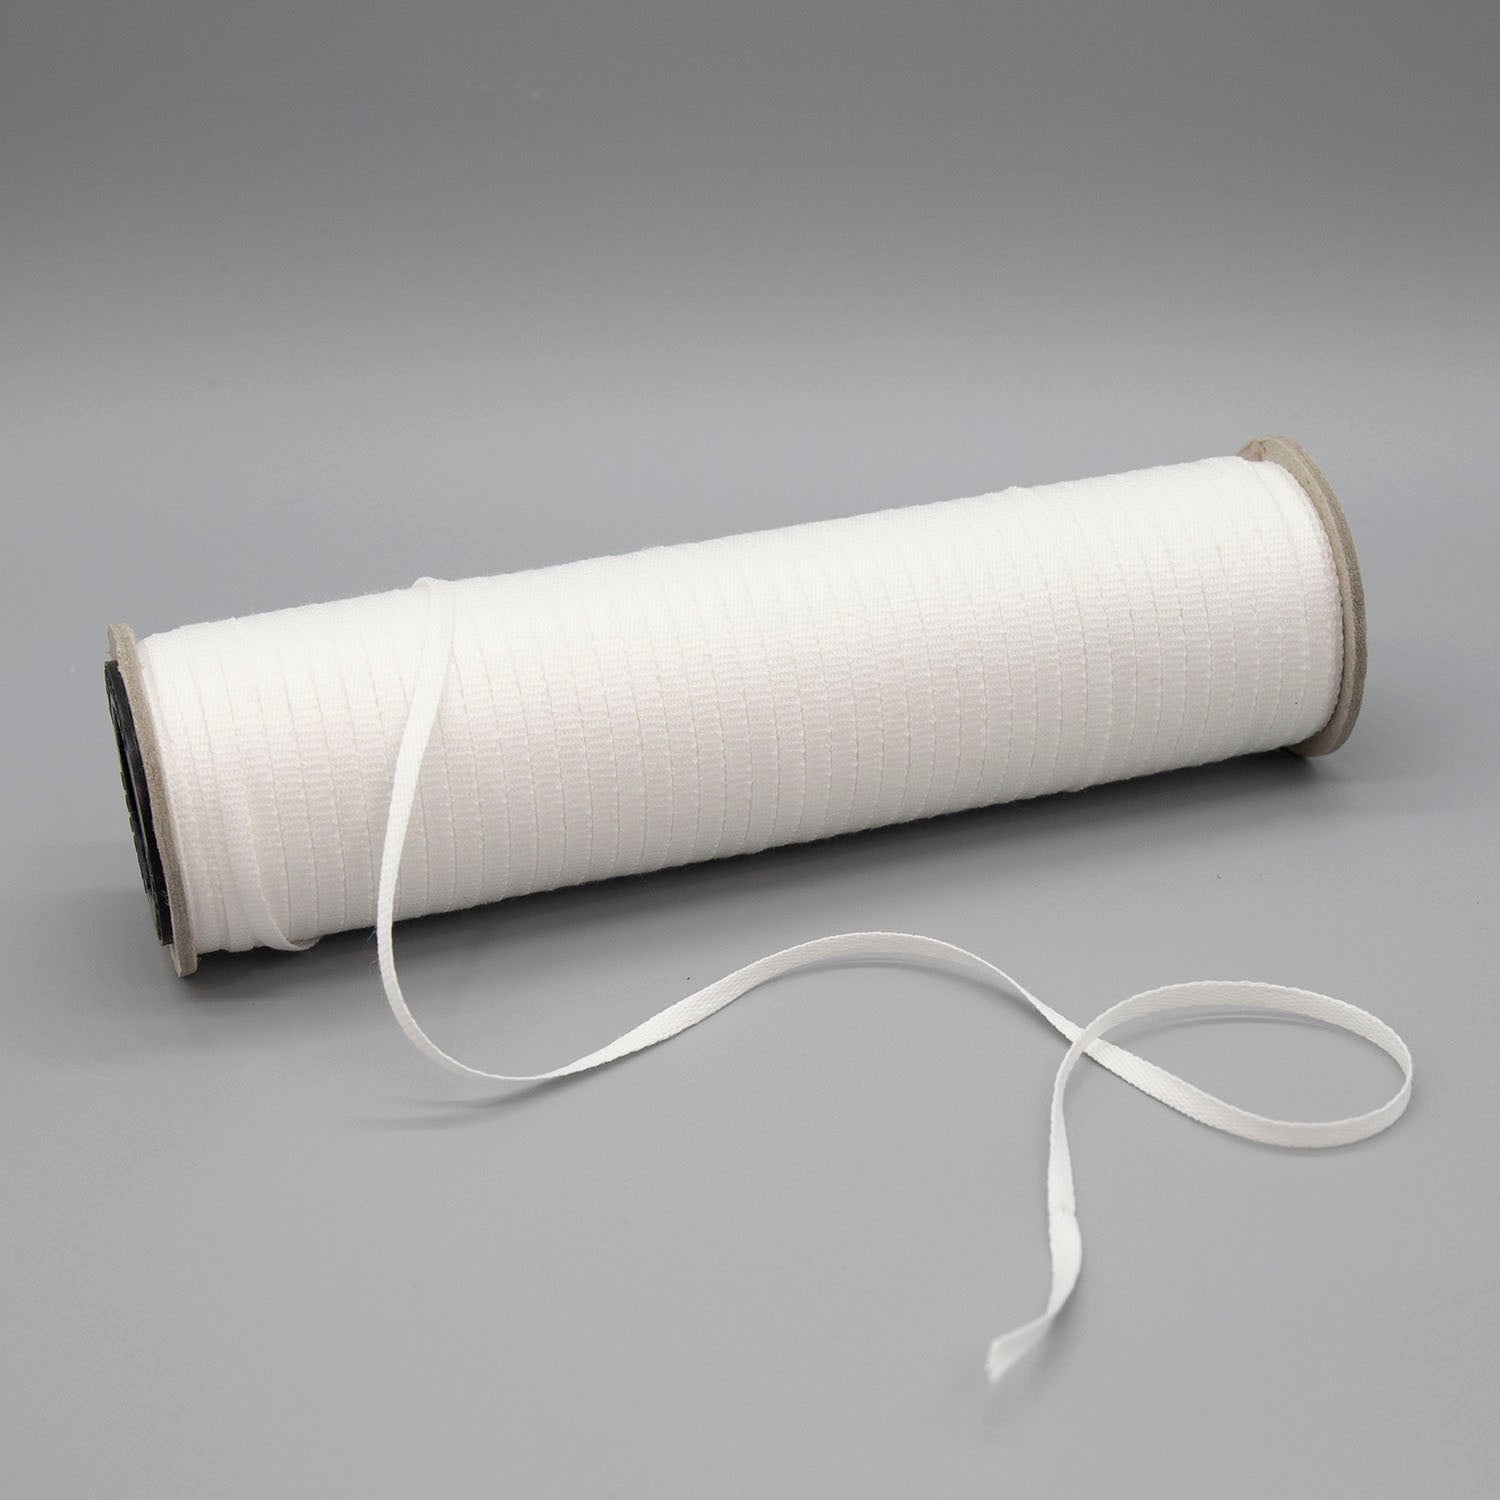 sew-ology white snap tape 27 snaps 1” apart 100% cotton